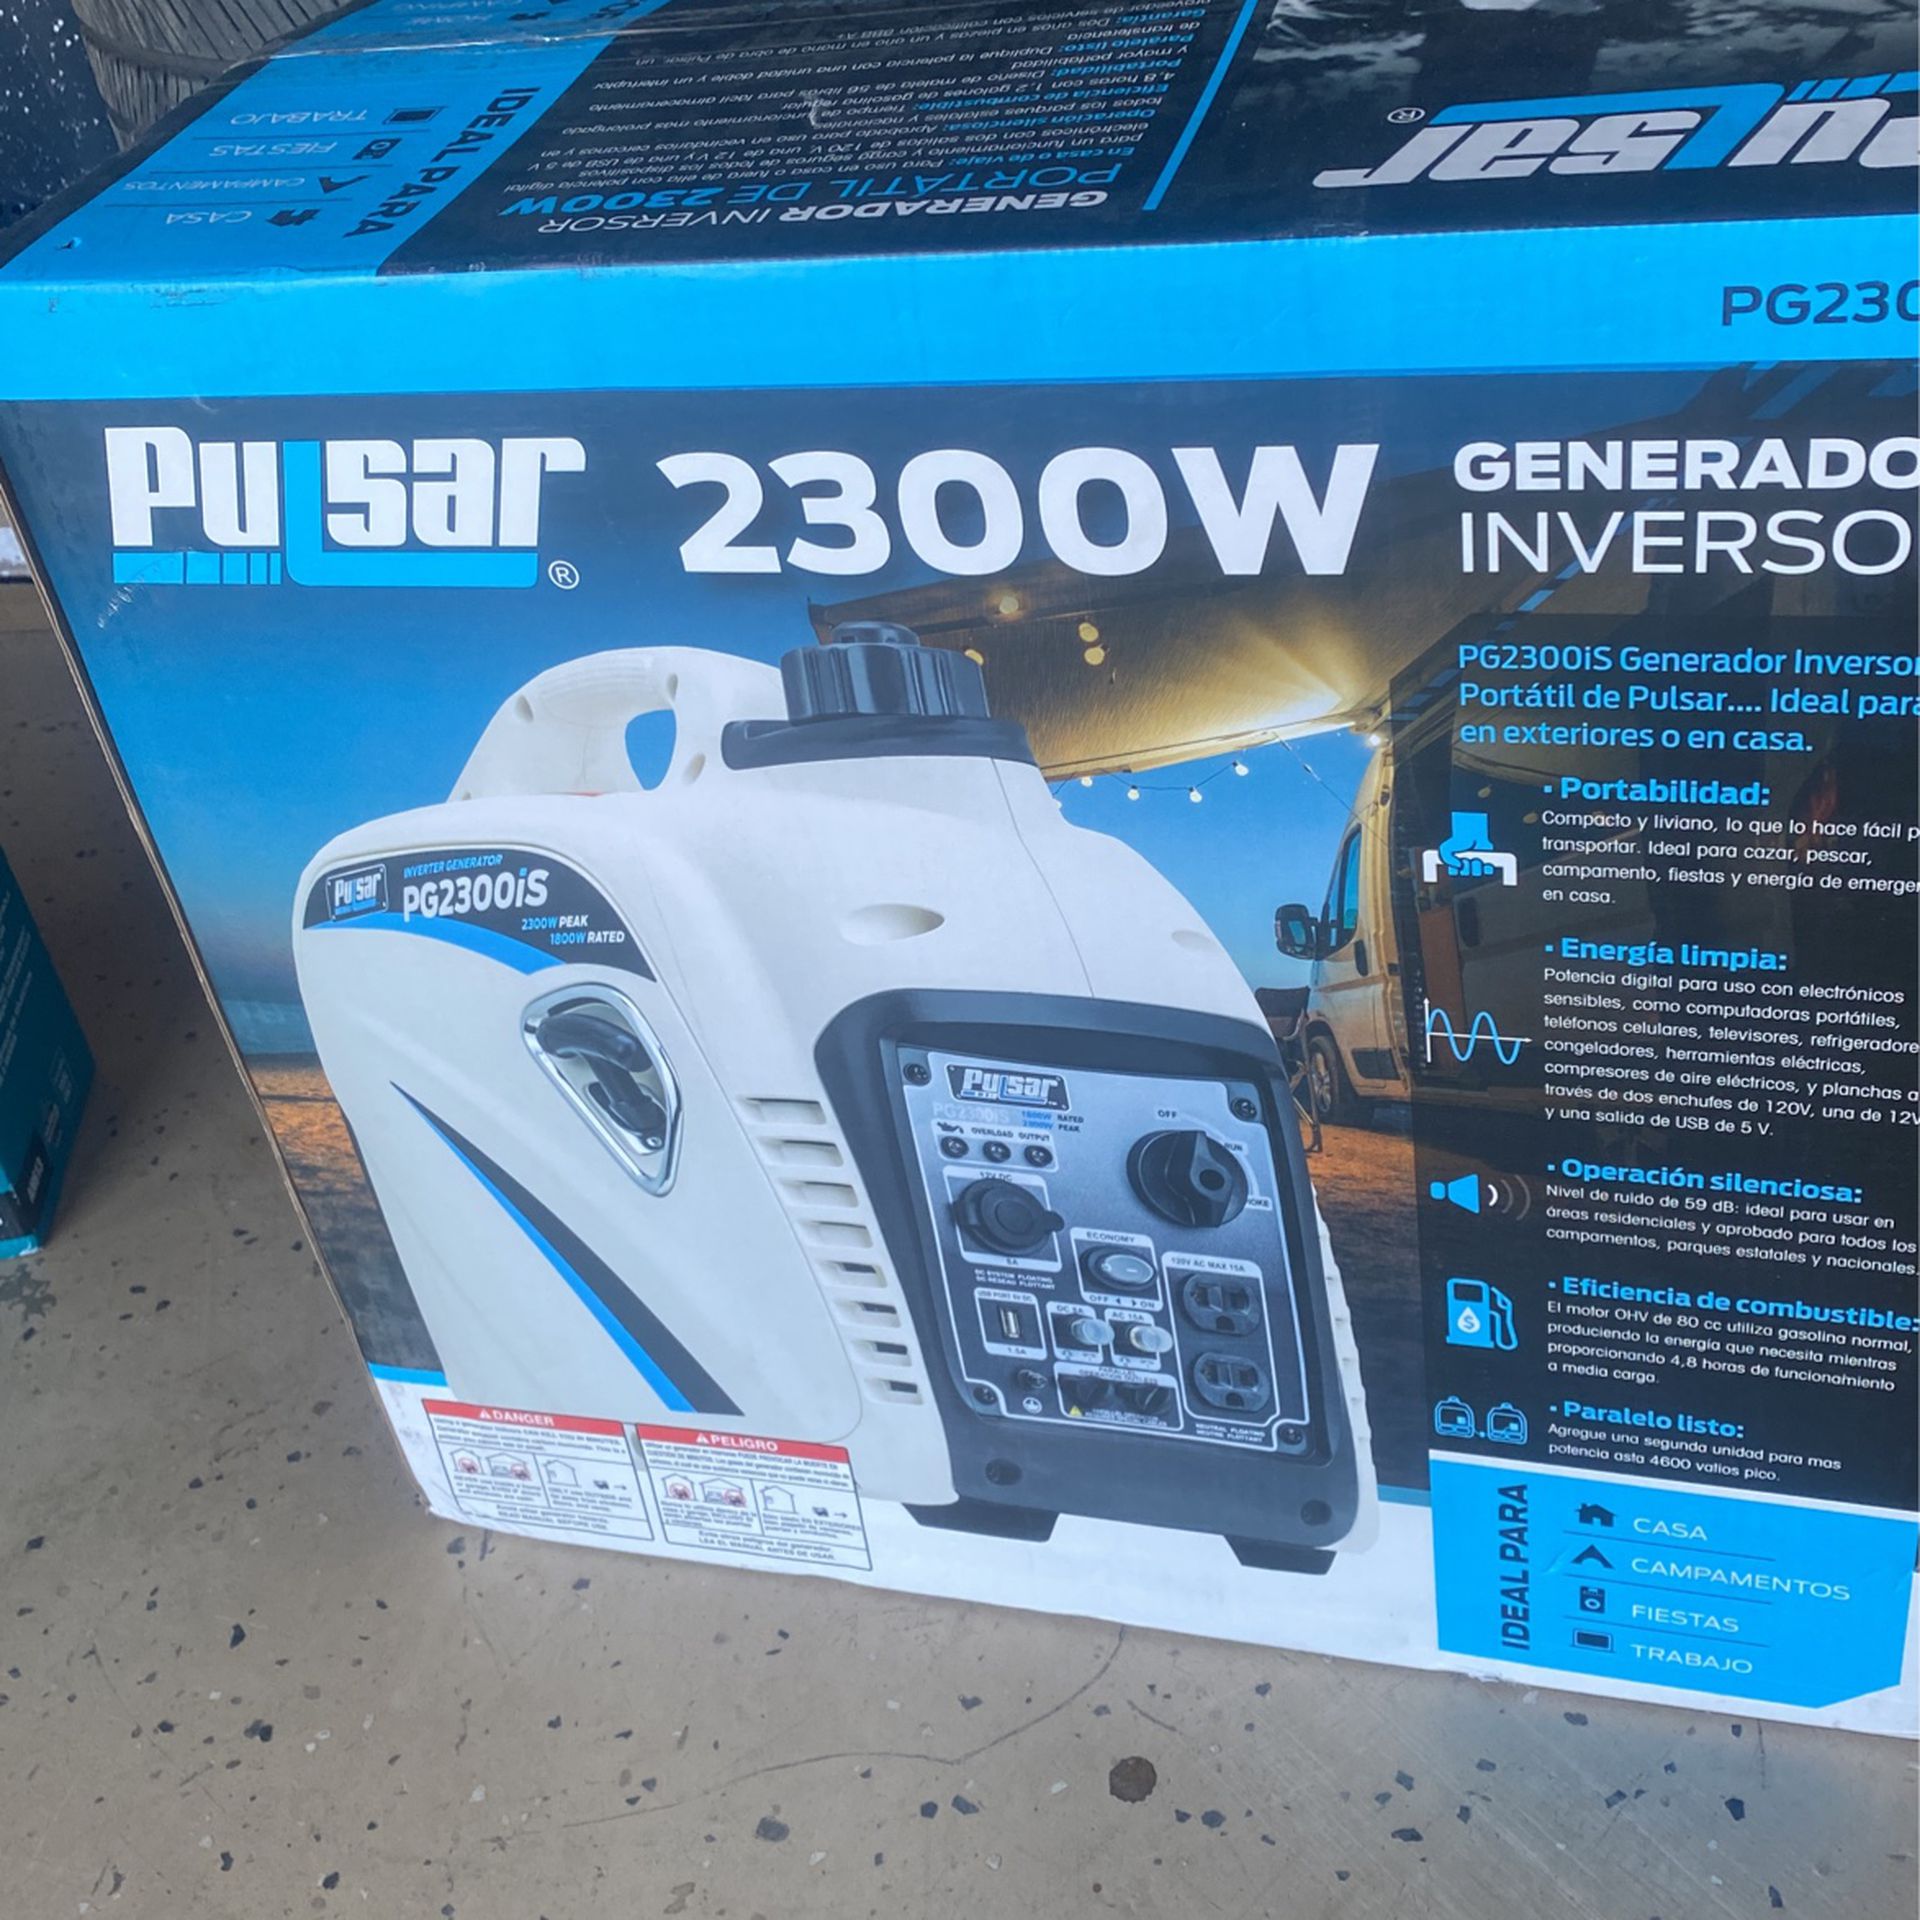 Pulsar 2300w Generador $390